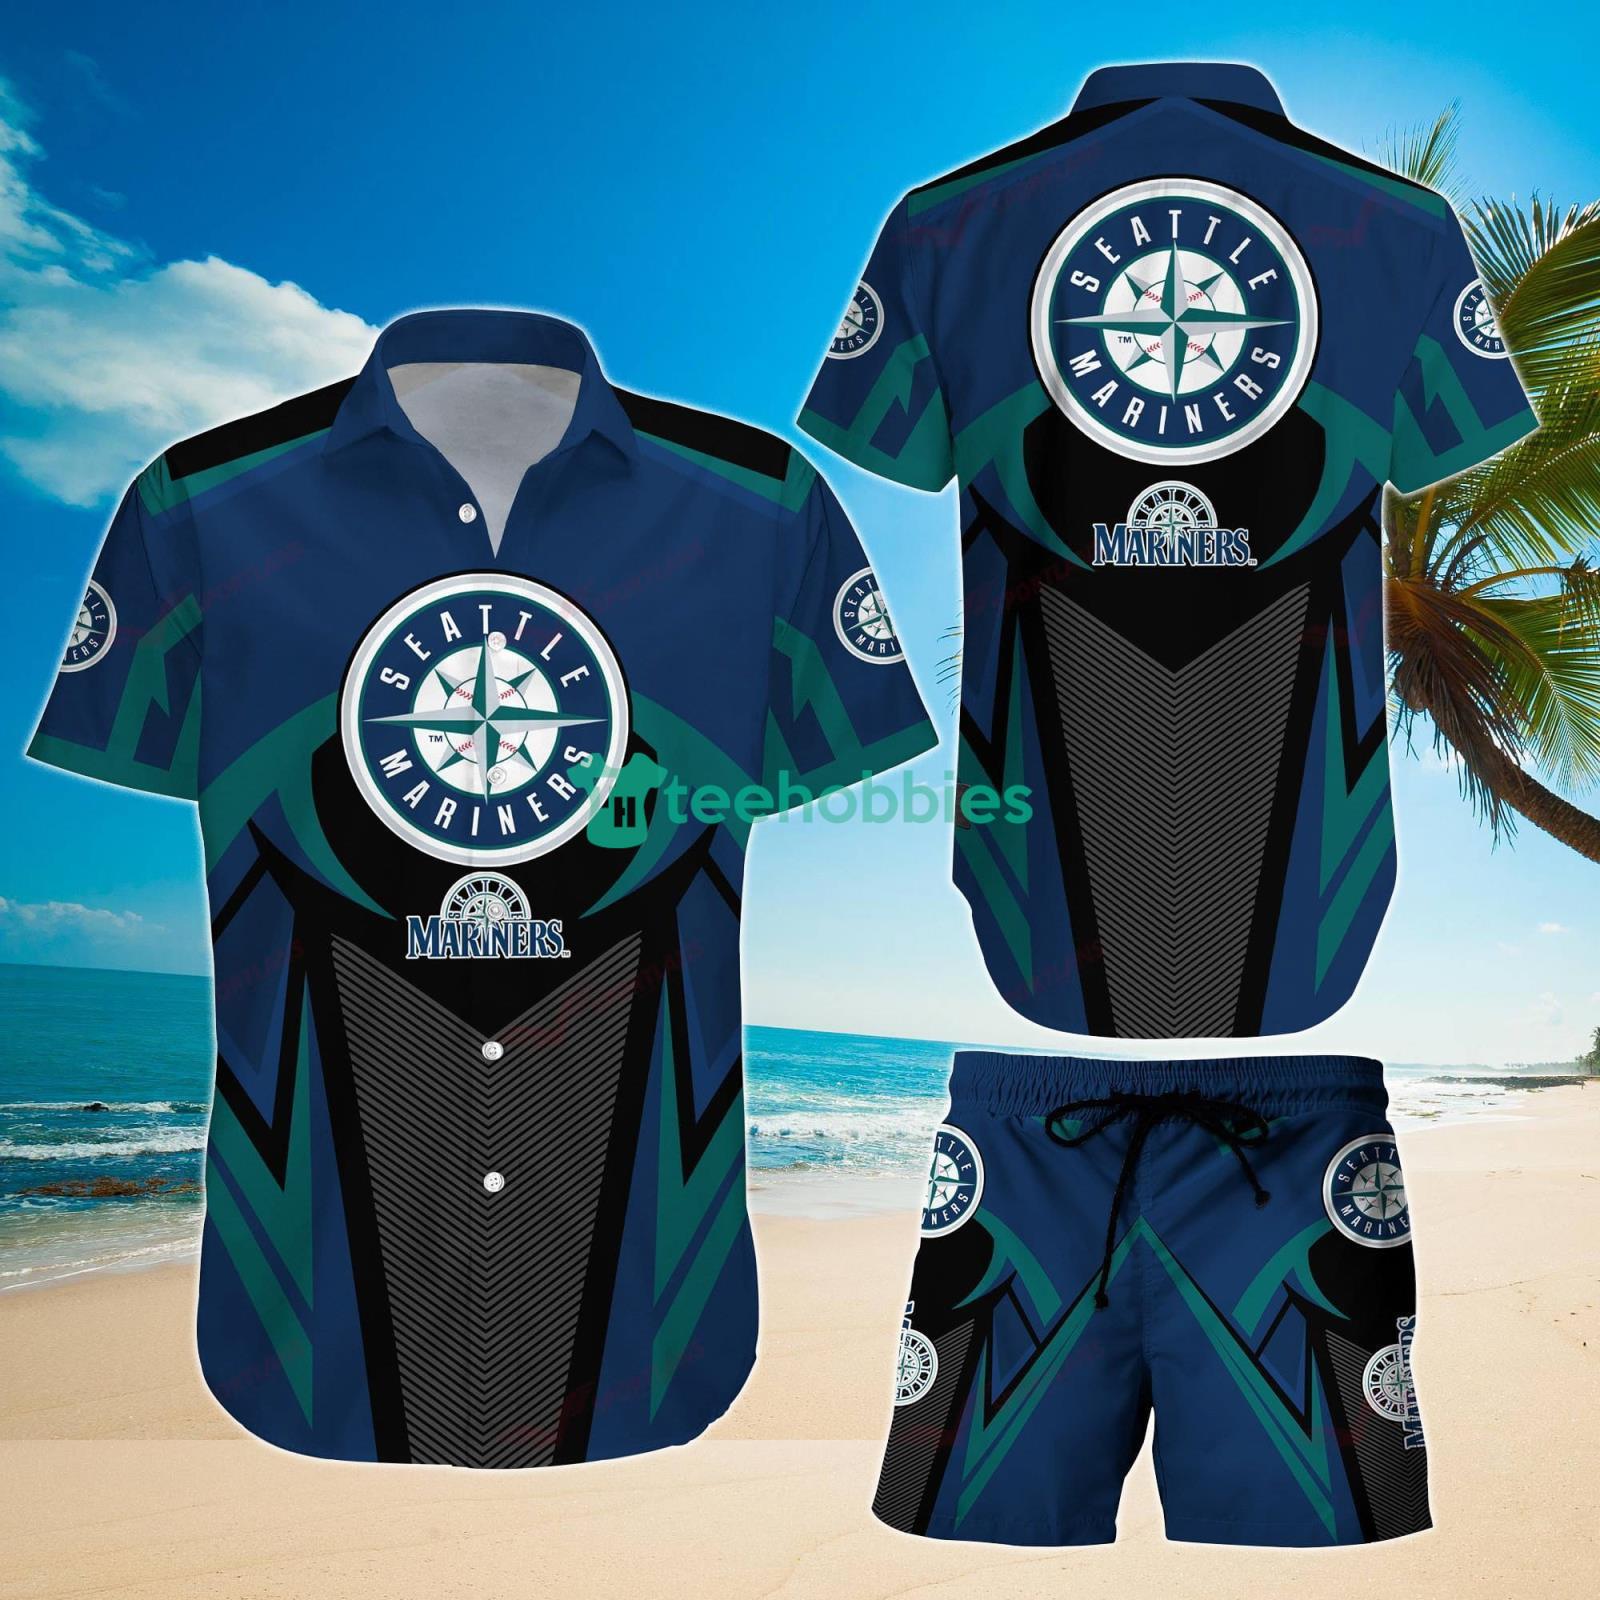 Ipeepz Mariners Hawaiian Shirt Night 2023